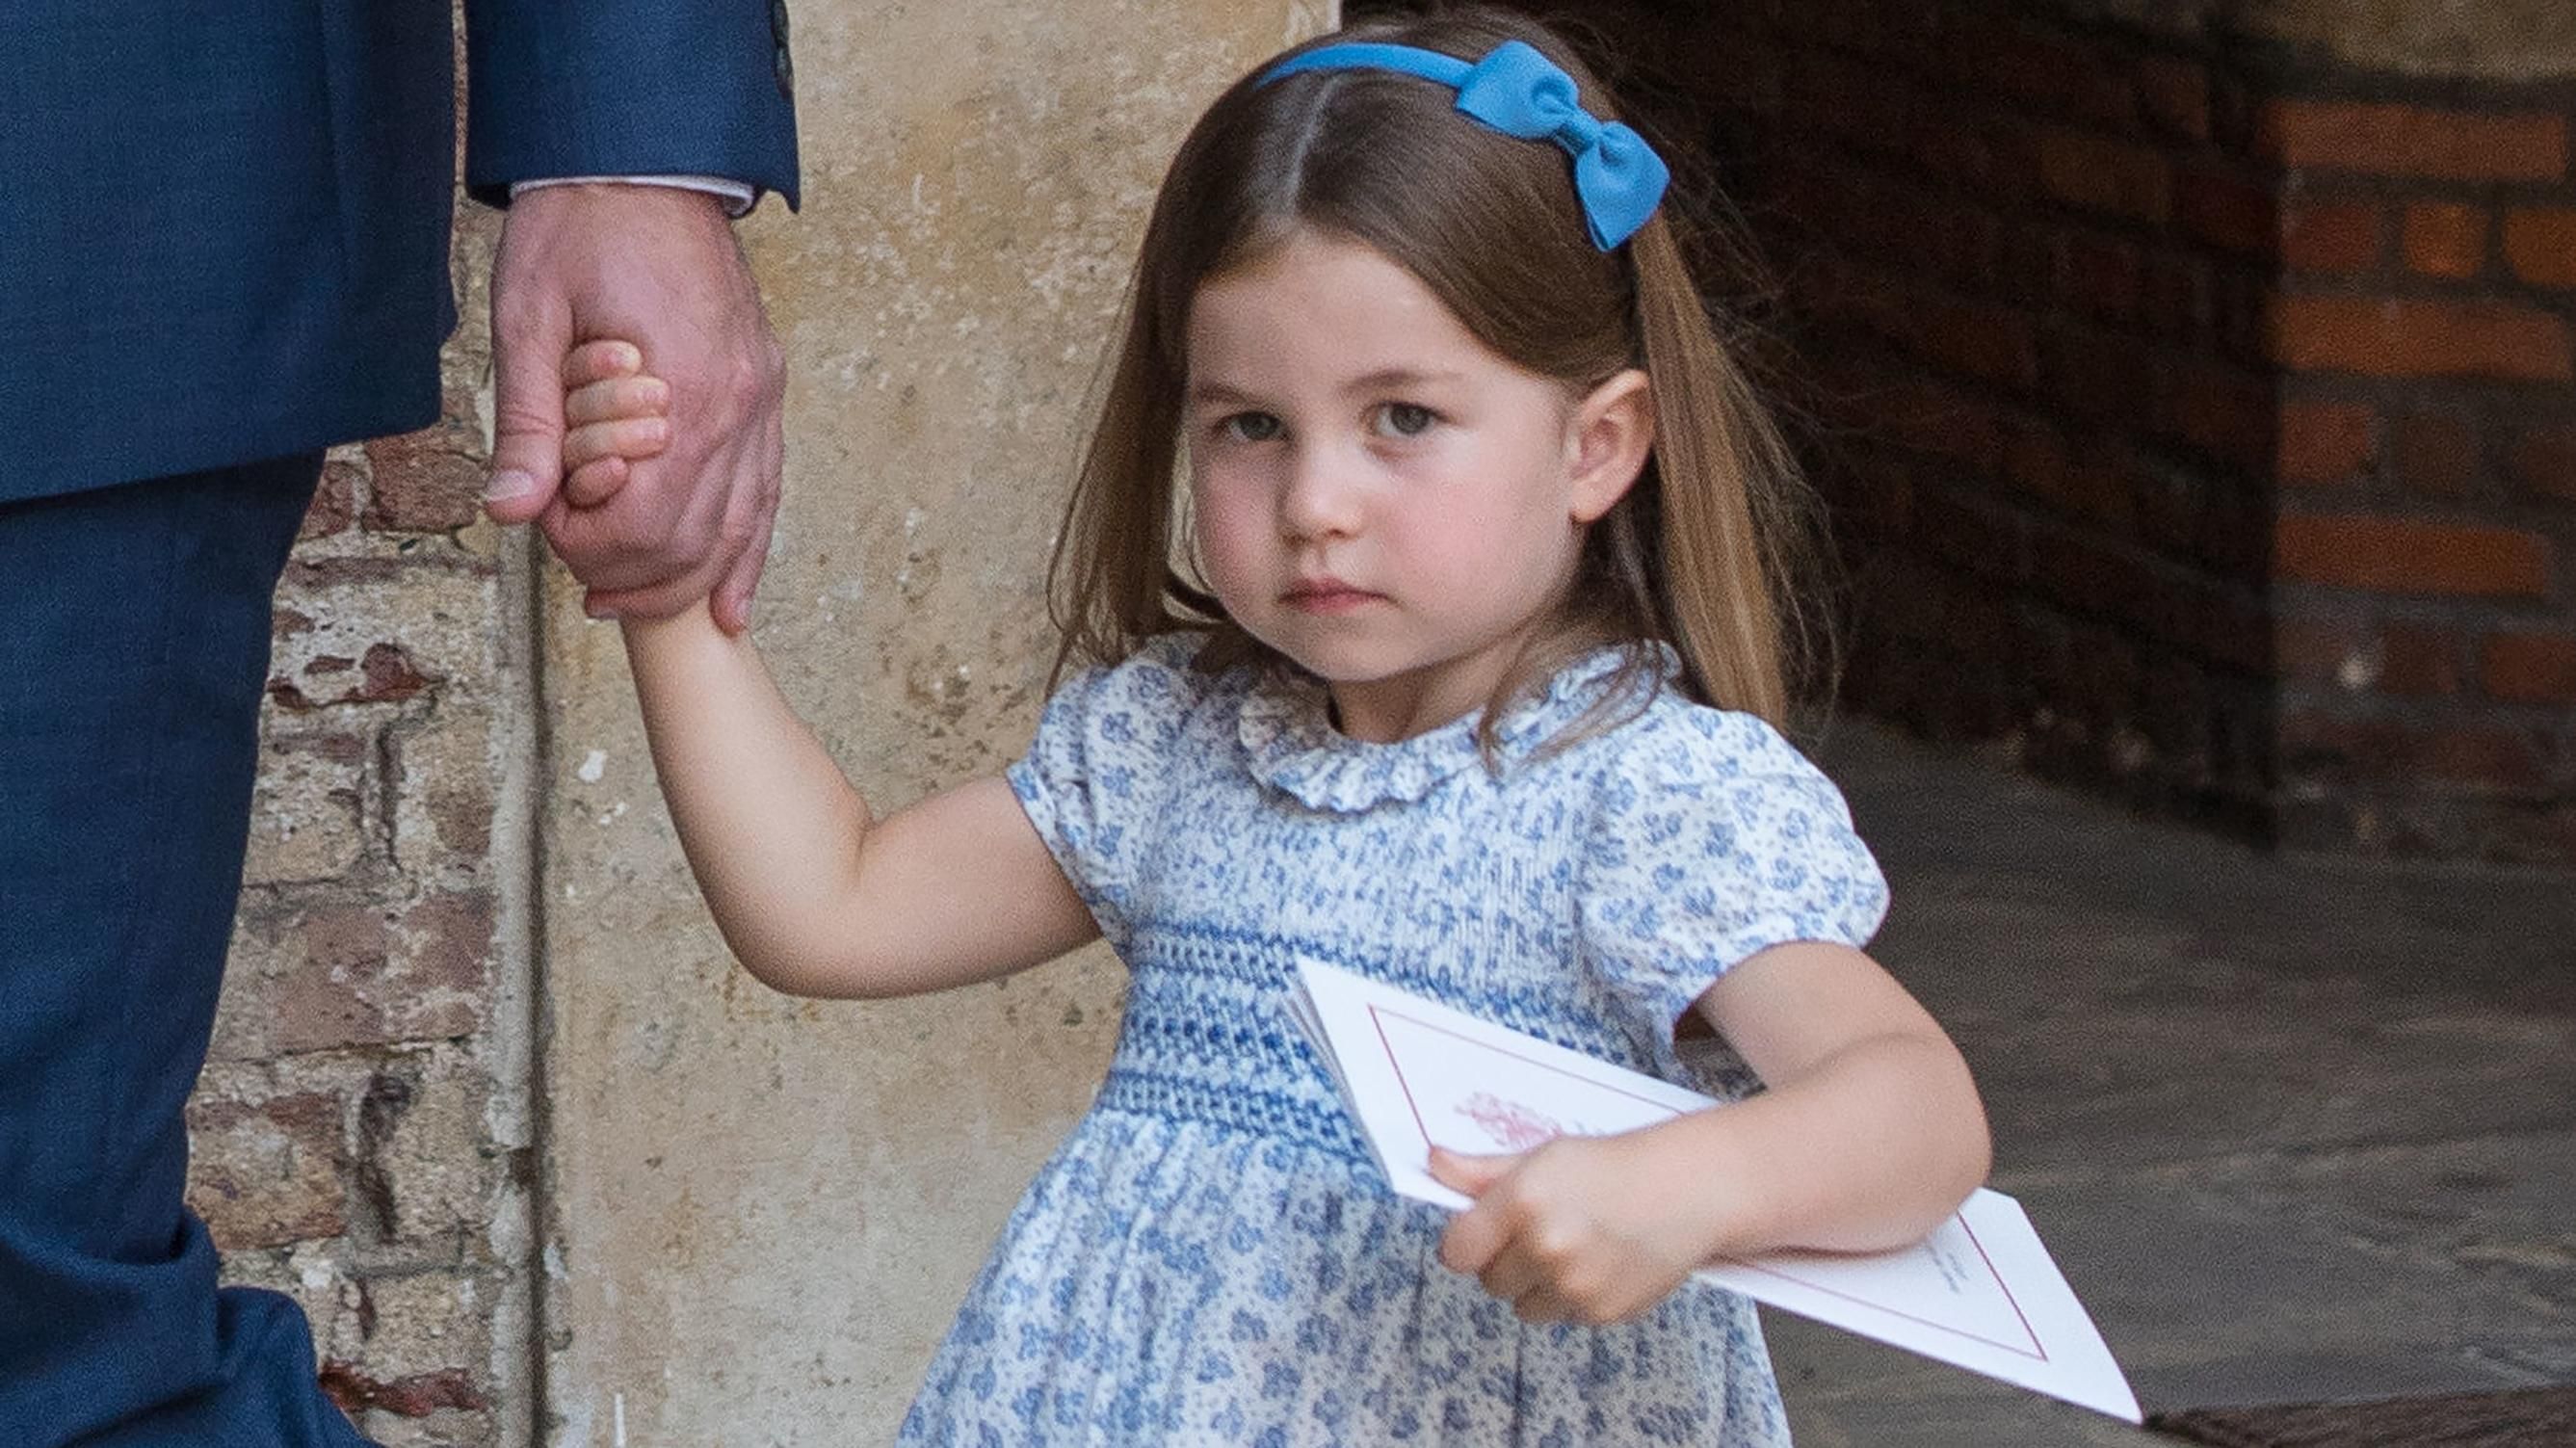 "Вас не звали": 3-летняя принцесса Шарлотта обратилась к журналистам с резким комментарием